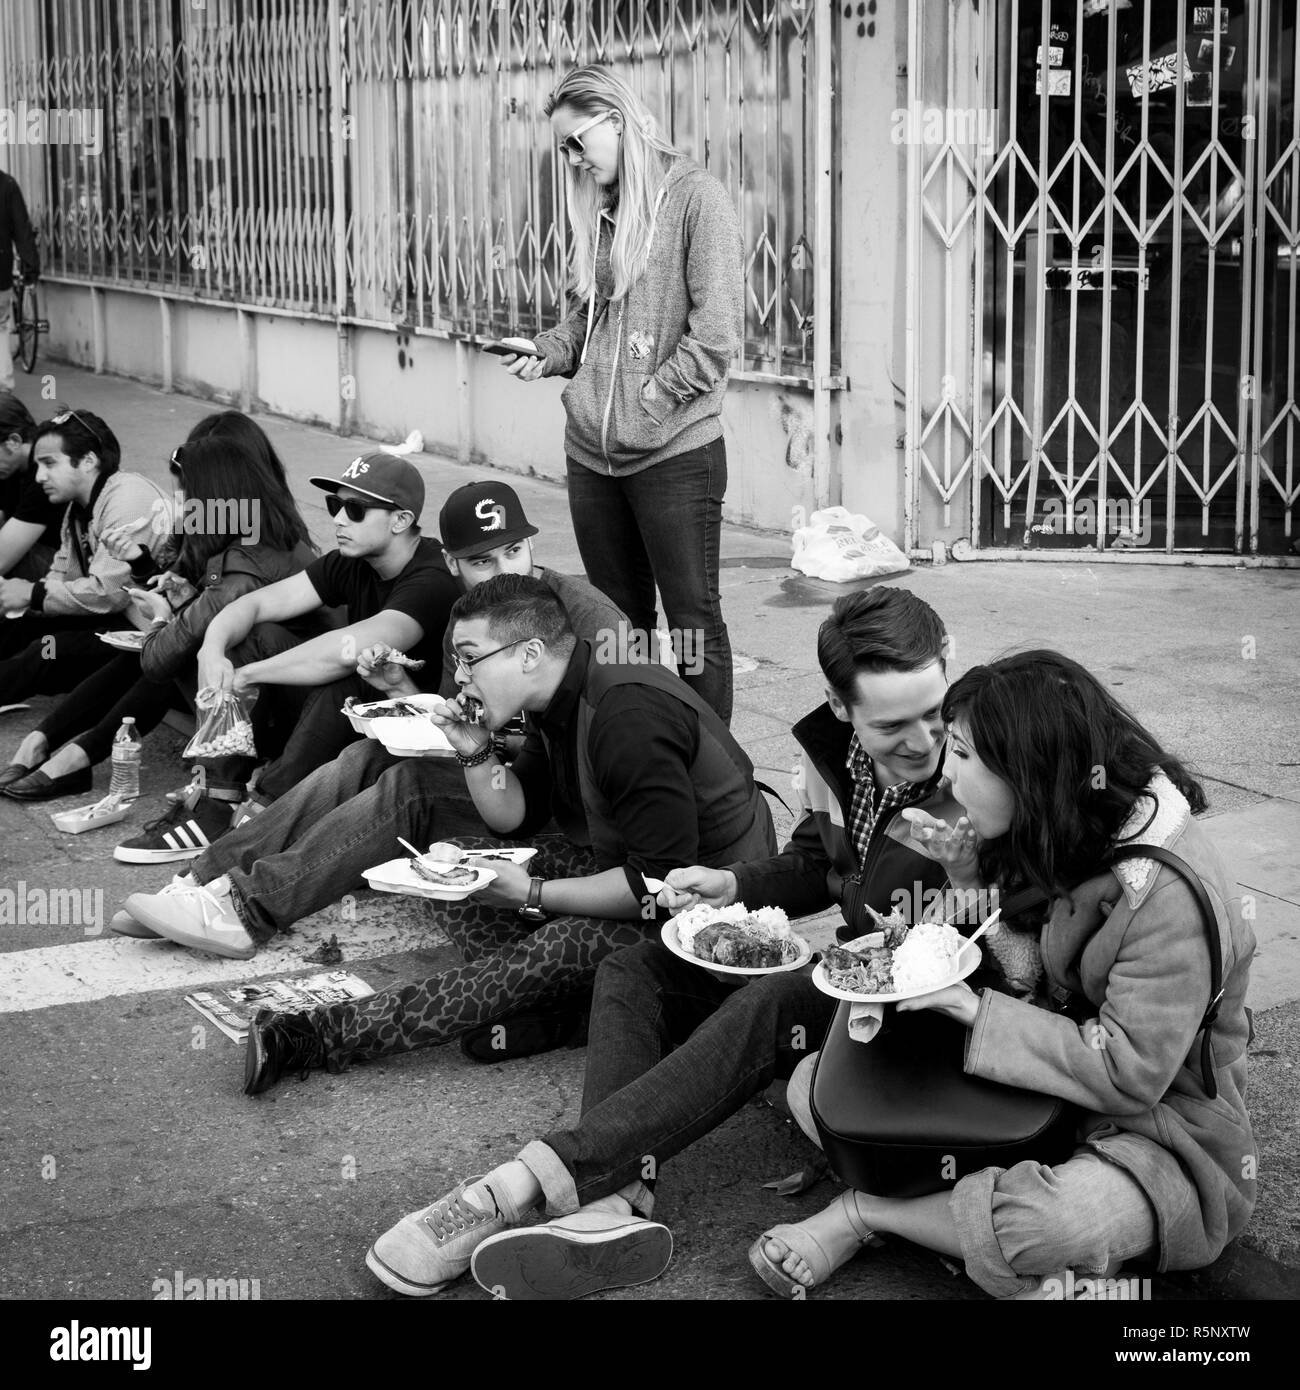 OAKLAND, CA-Giugno 6, 2014: Millenials seduti sul cordolo strada mangiando cibo in un mensile galleria d'arte hop denominato Arte mormorio. Bianco e nero square. Foto Stock